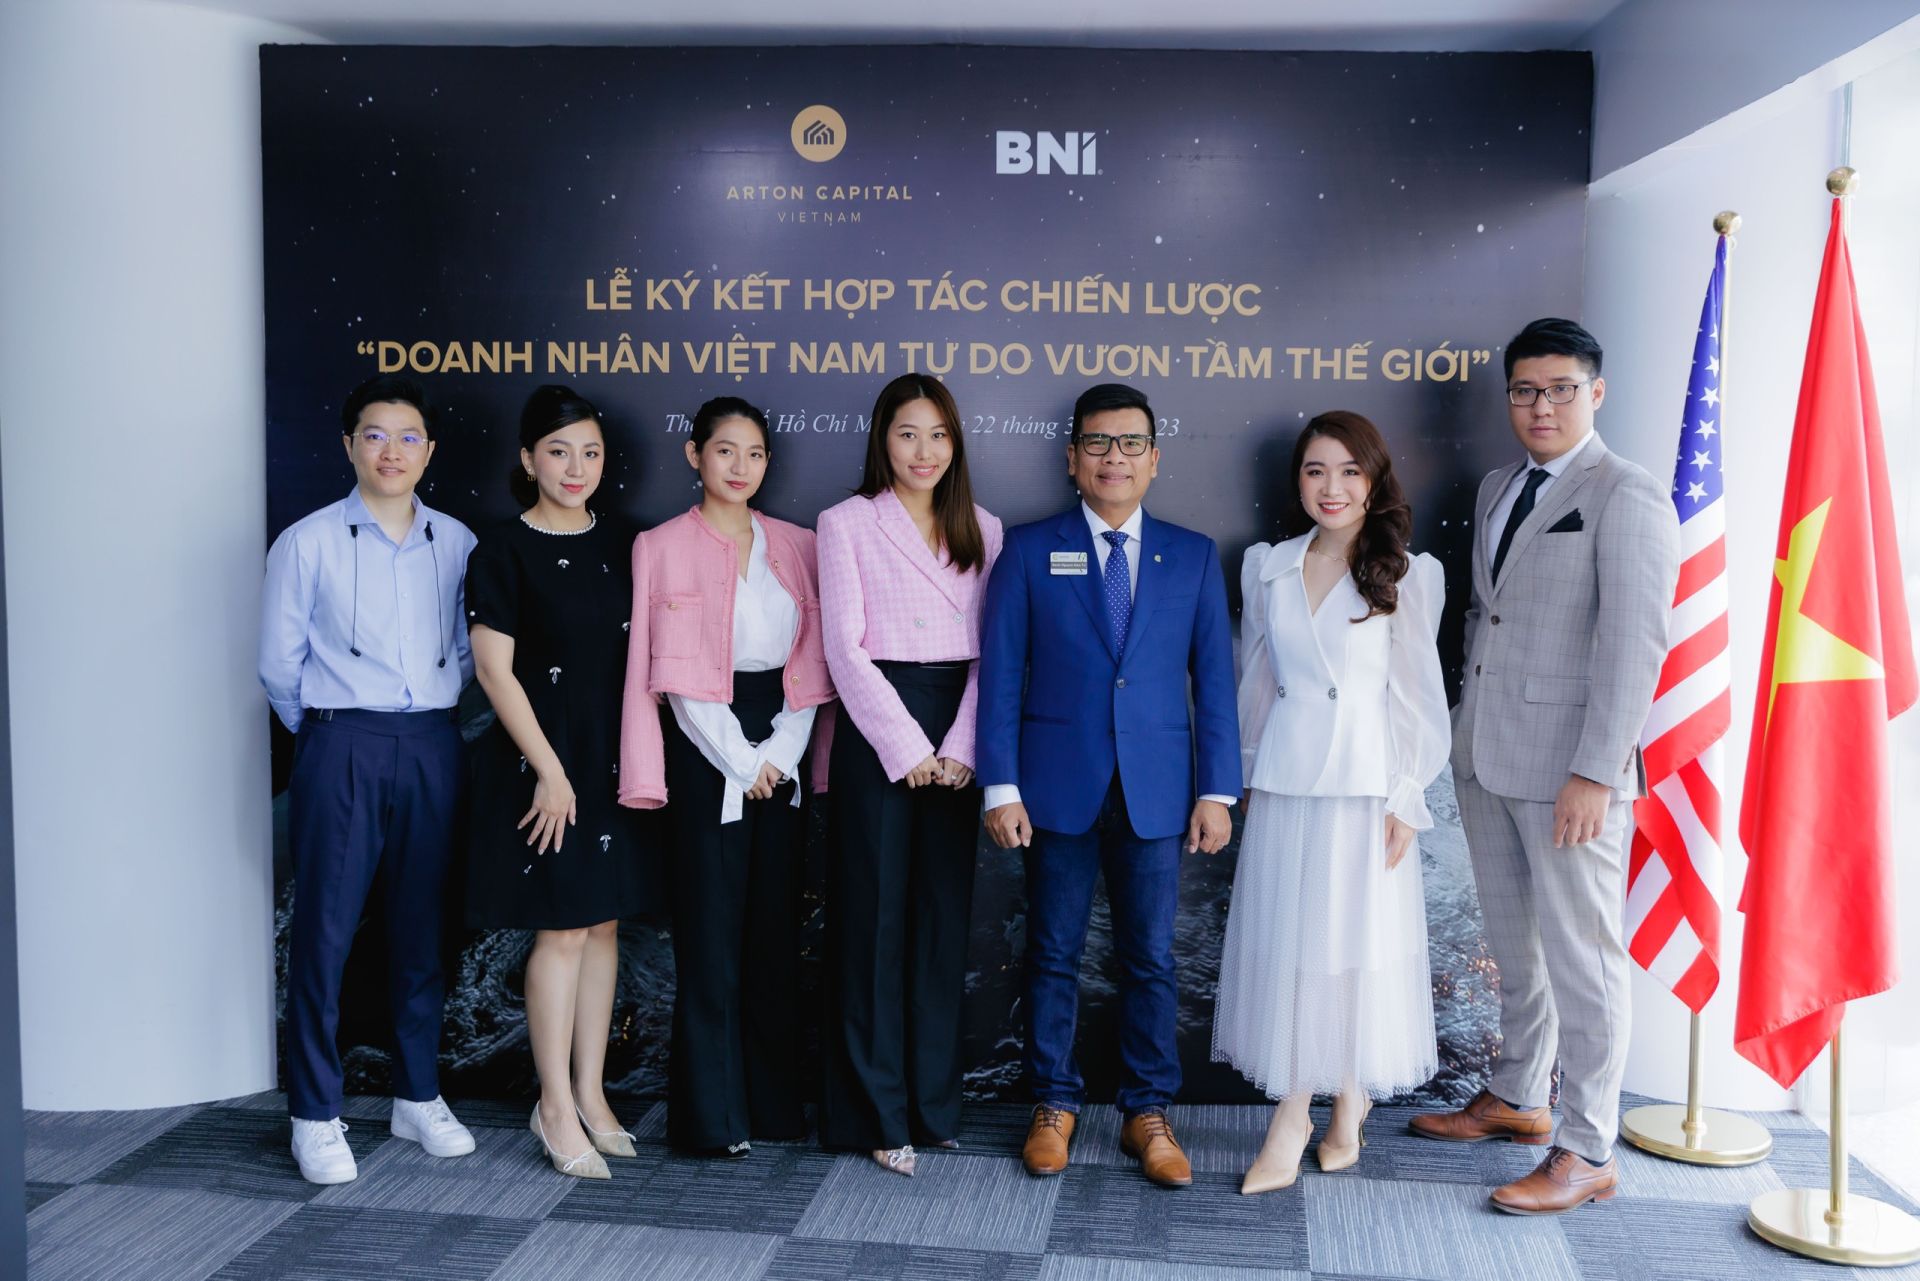 Sự kiện cũng có sự góp mặt của một số doanh nhân trẻ, là thế hệ F2 đang trực tiếp tham gia quản lý và vận hành các doanh nghiệp vừa và lớn tại Việt Nam